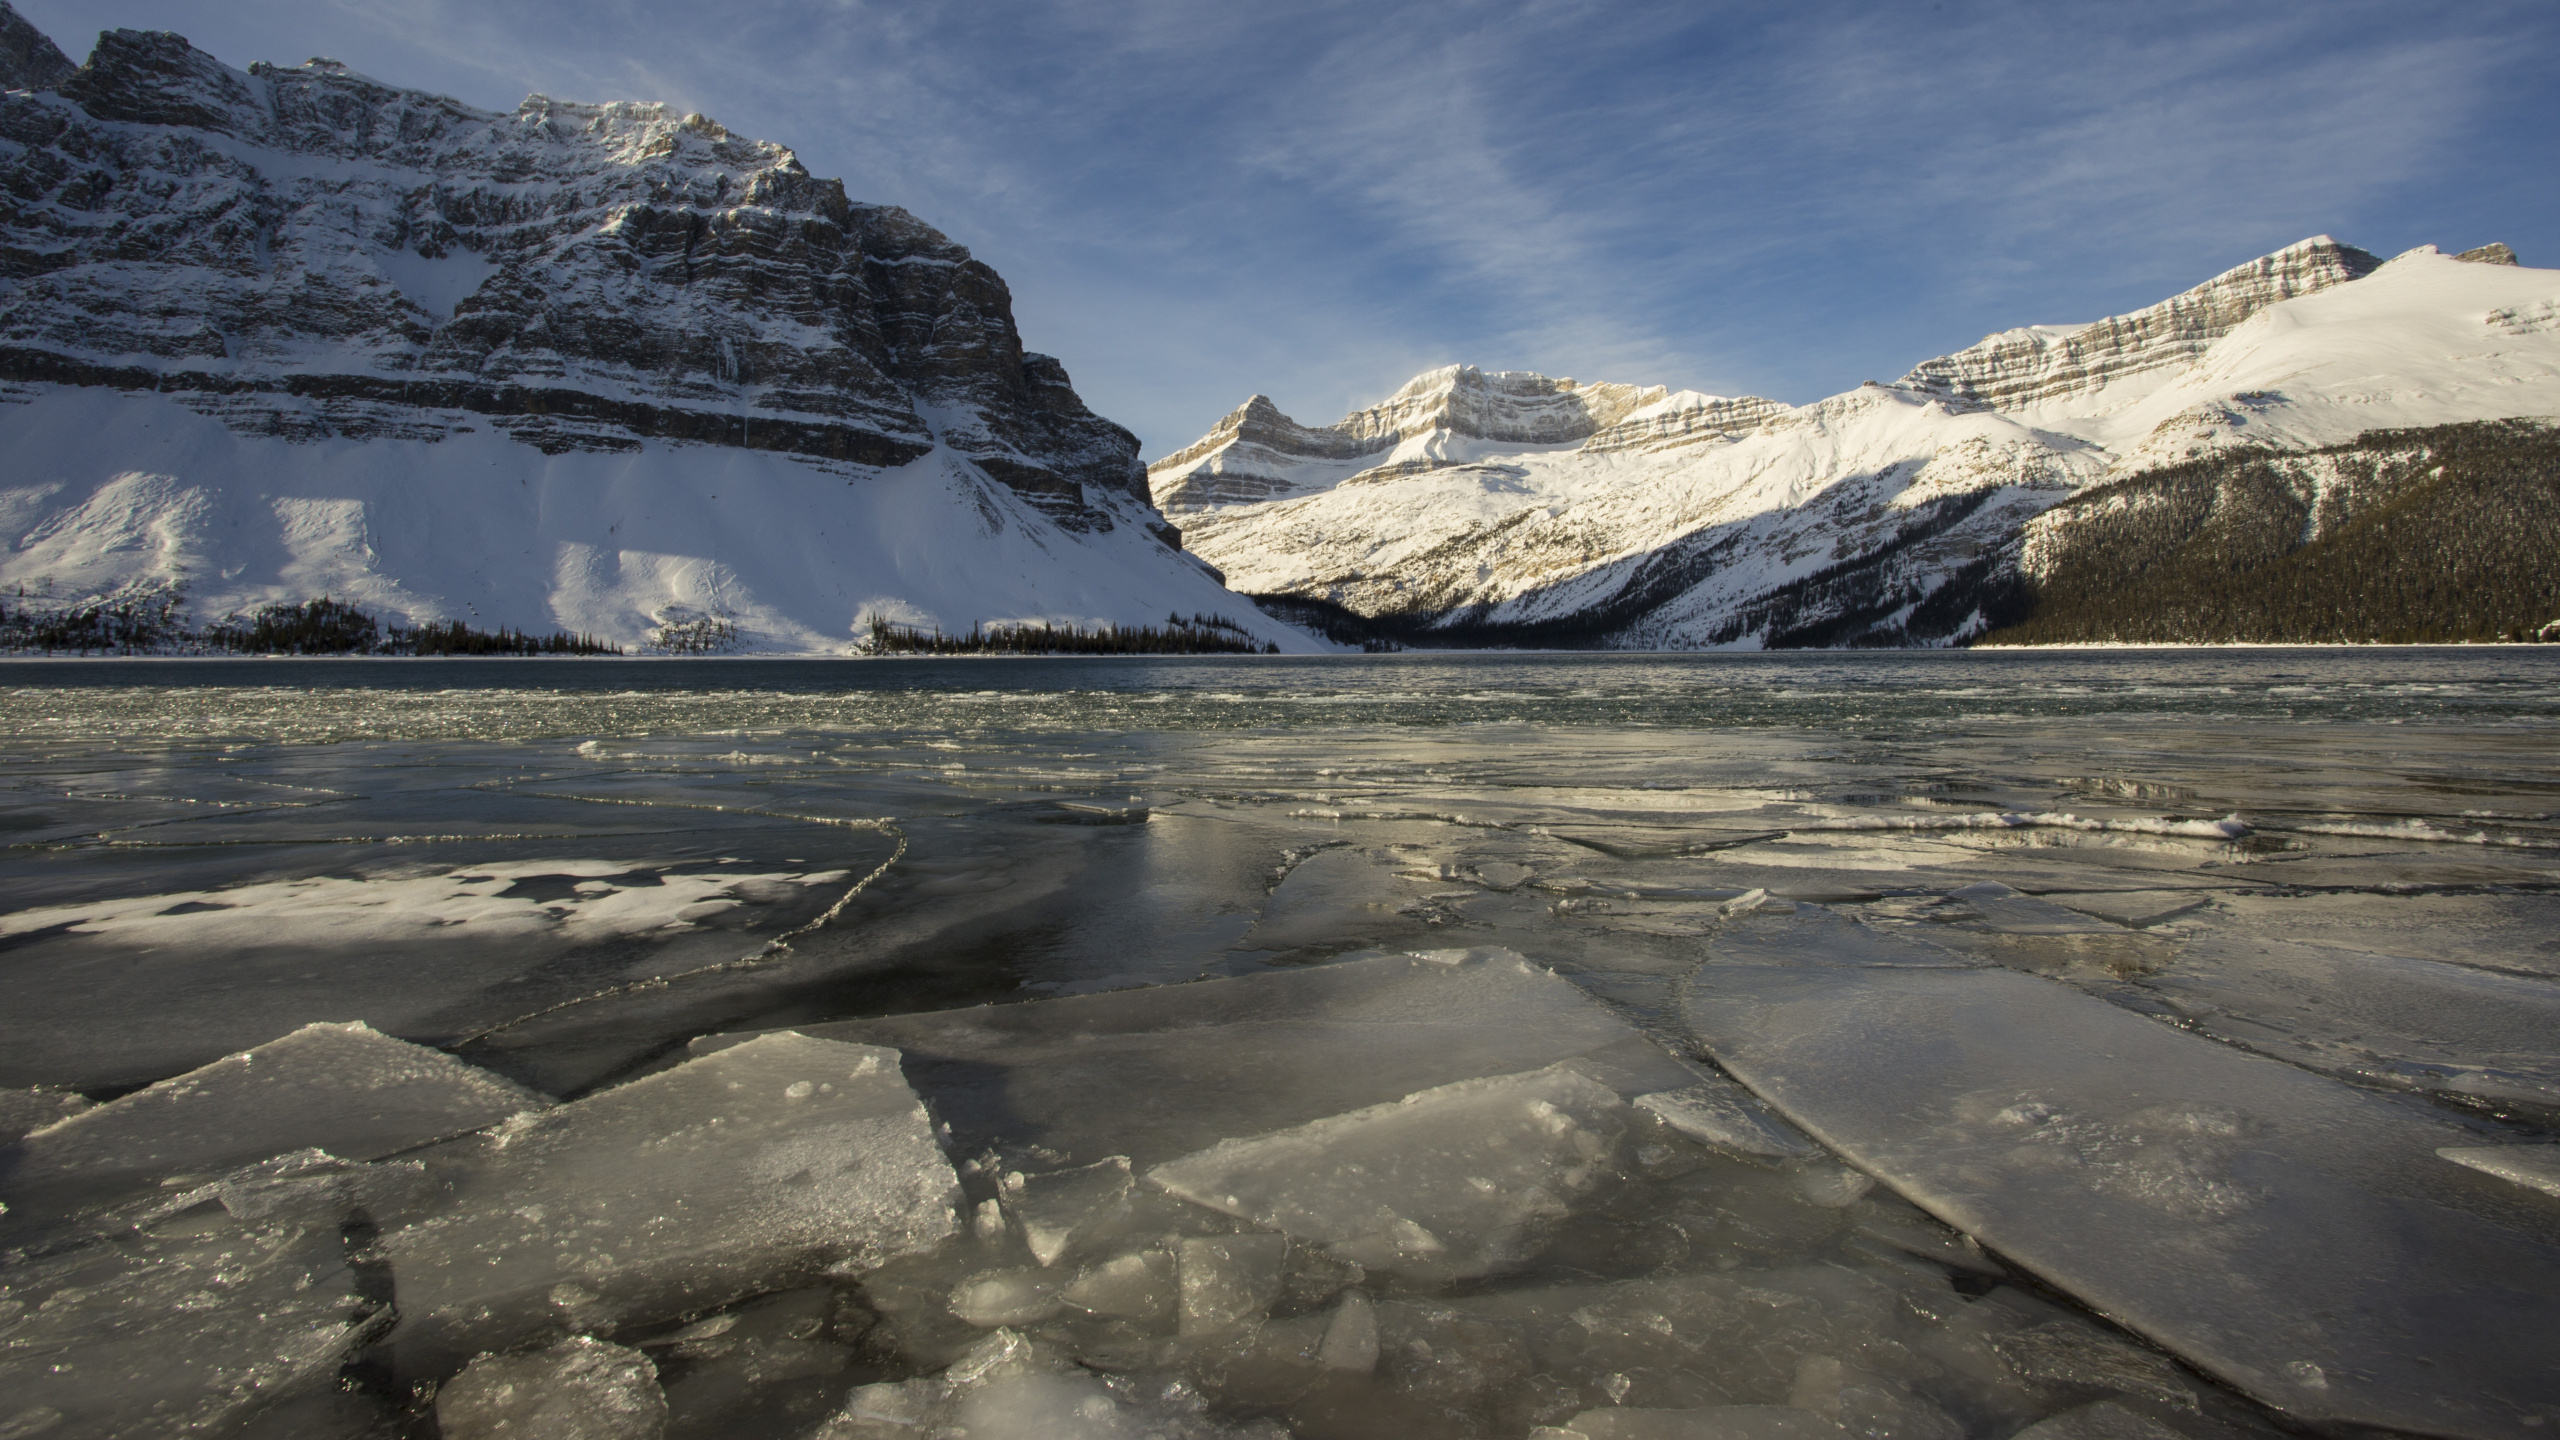 弓湖, 冰川湖, 冰川地貌, 北极, 冰川 壁纸 2560x1440 允许